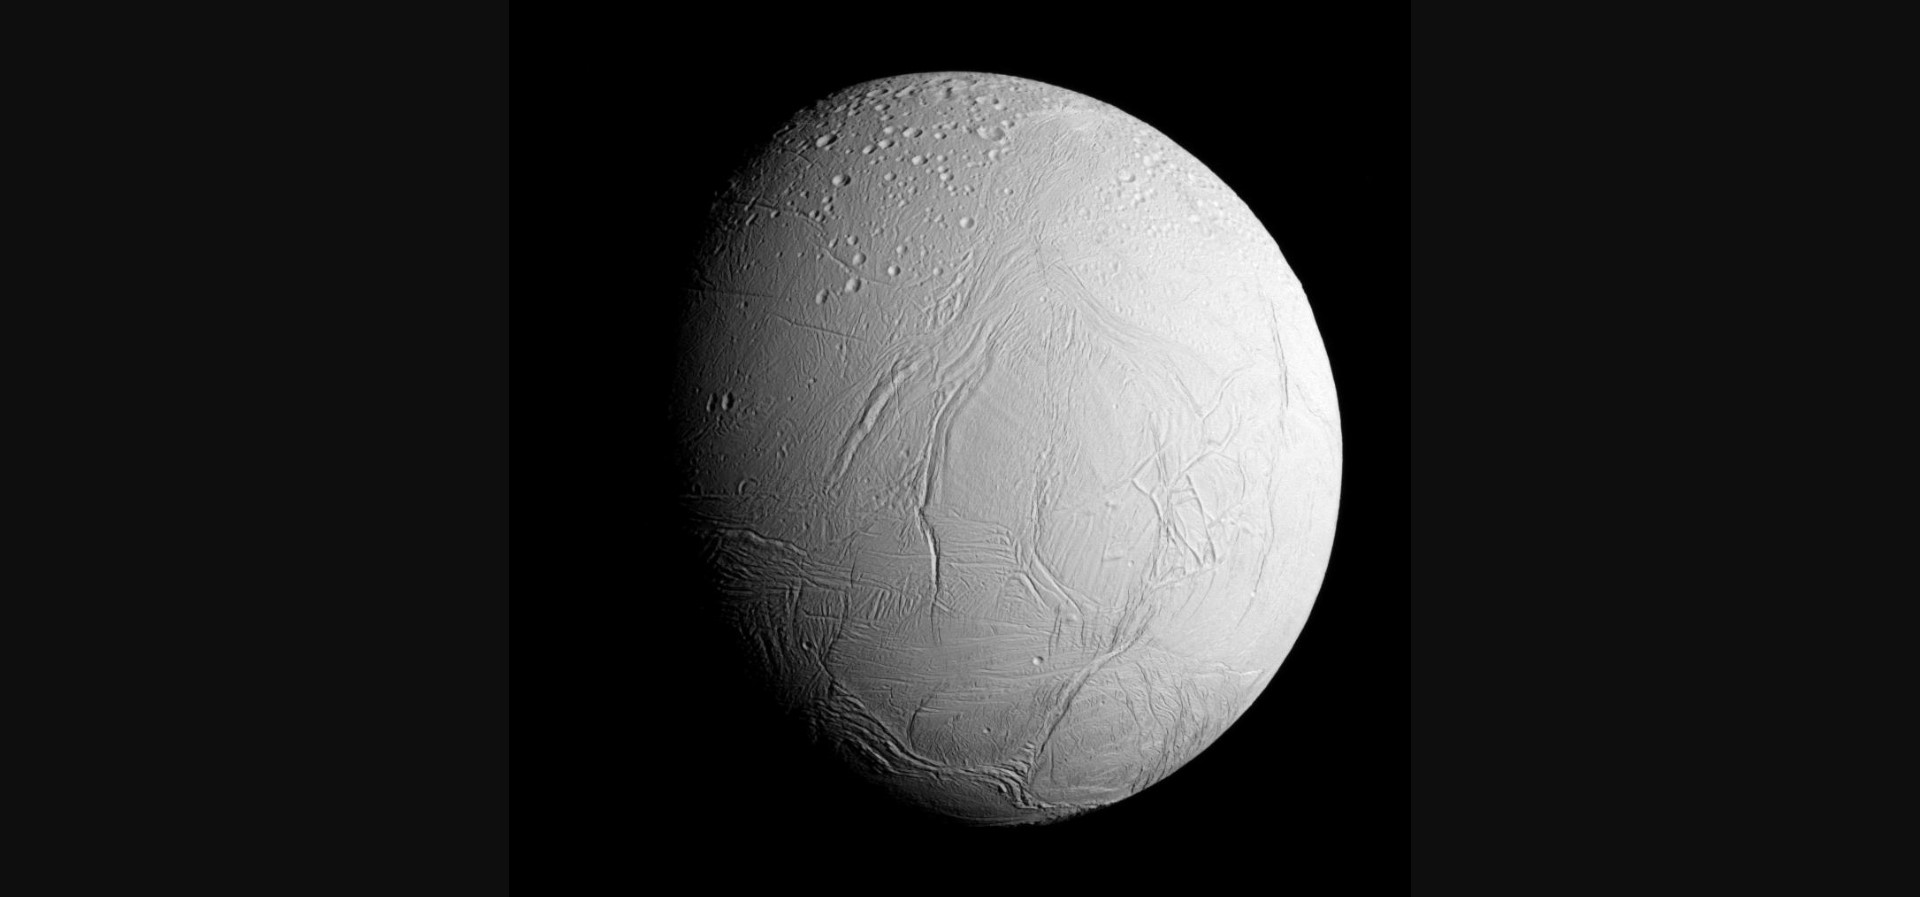 Критический для жизни элемент найден в океане на ледяном спутнике Сатурна